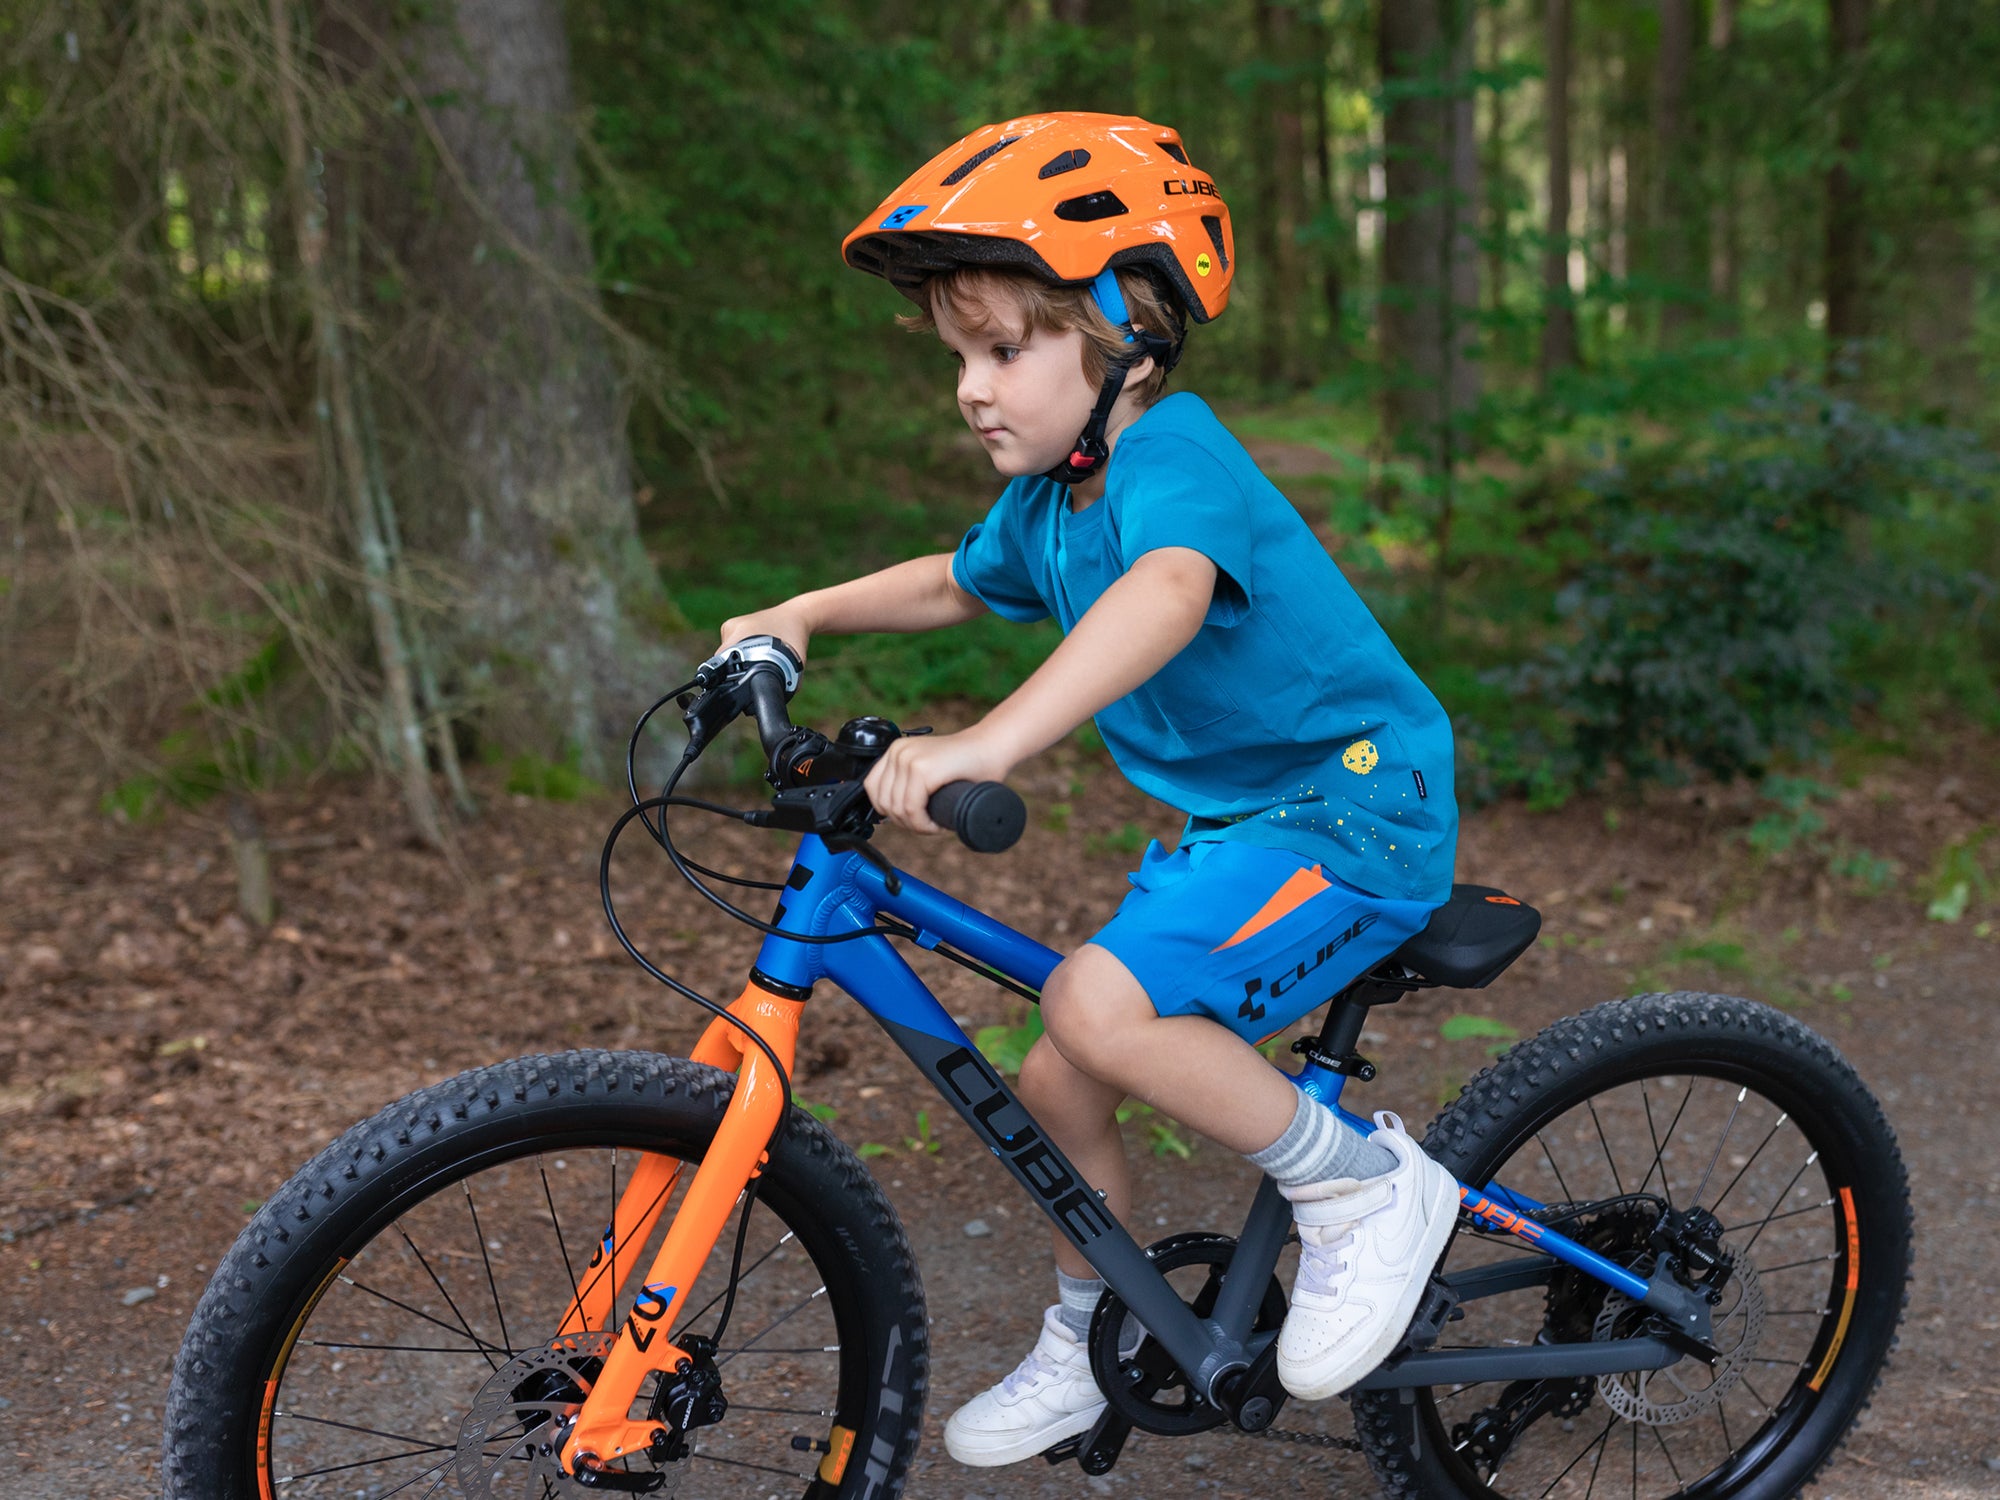 Ein junge in blauer Sportkleidung und einem orangenen Fahrradhelm fährt auf seinem Cube Kinderfahrrad durch einen Wald